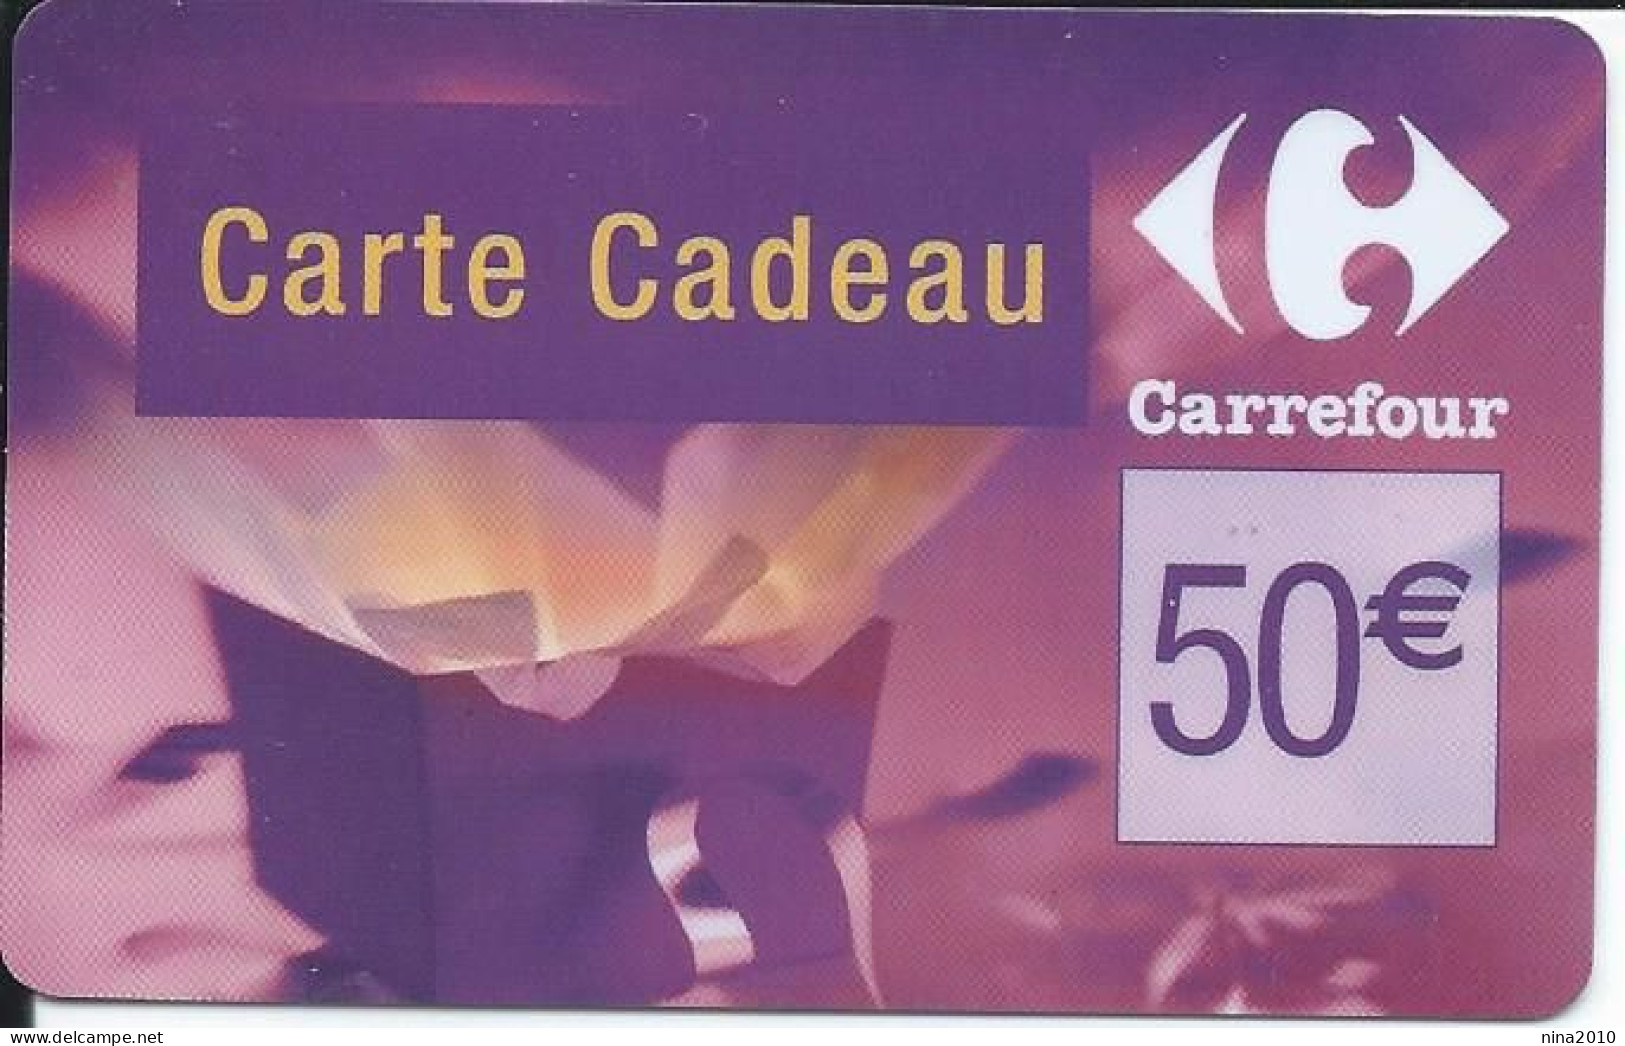 Carte Cadeau - Carrefour Verso 31/12/2007  - VOIR DESCRIPTION Avant Enchères -  GIFT CARD /GESCHENKKARTE - Cartes Cadeaux